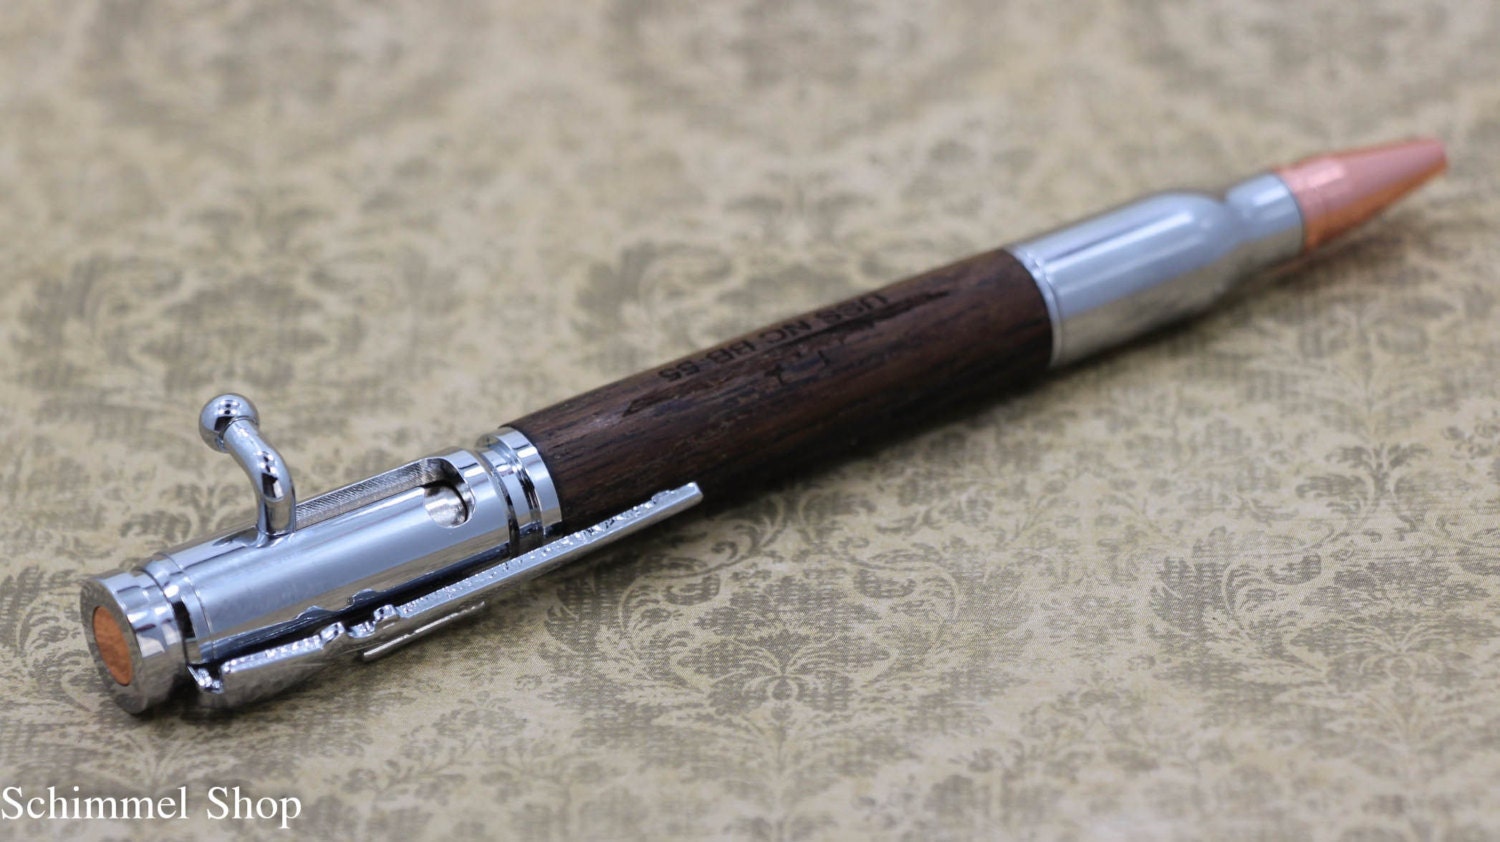 Handmade Schimmel Pen, Bolt Action Bullet Pen, Chrome or Gun